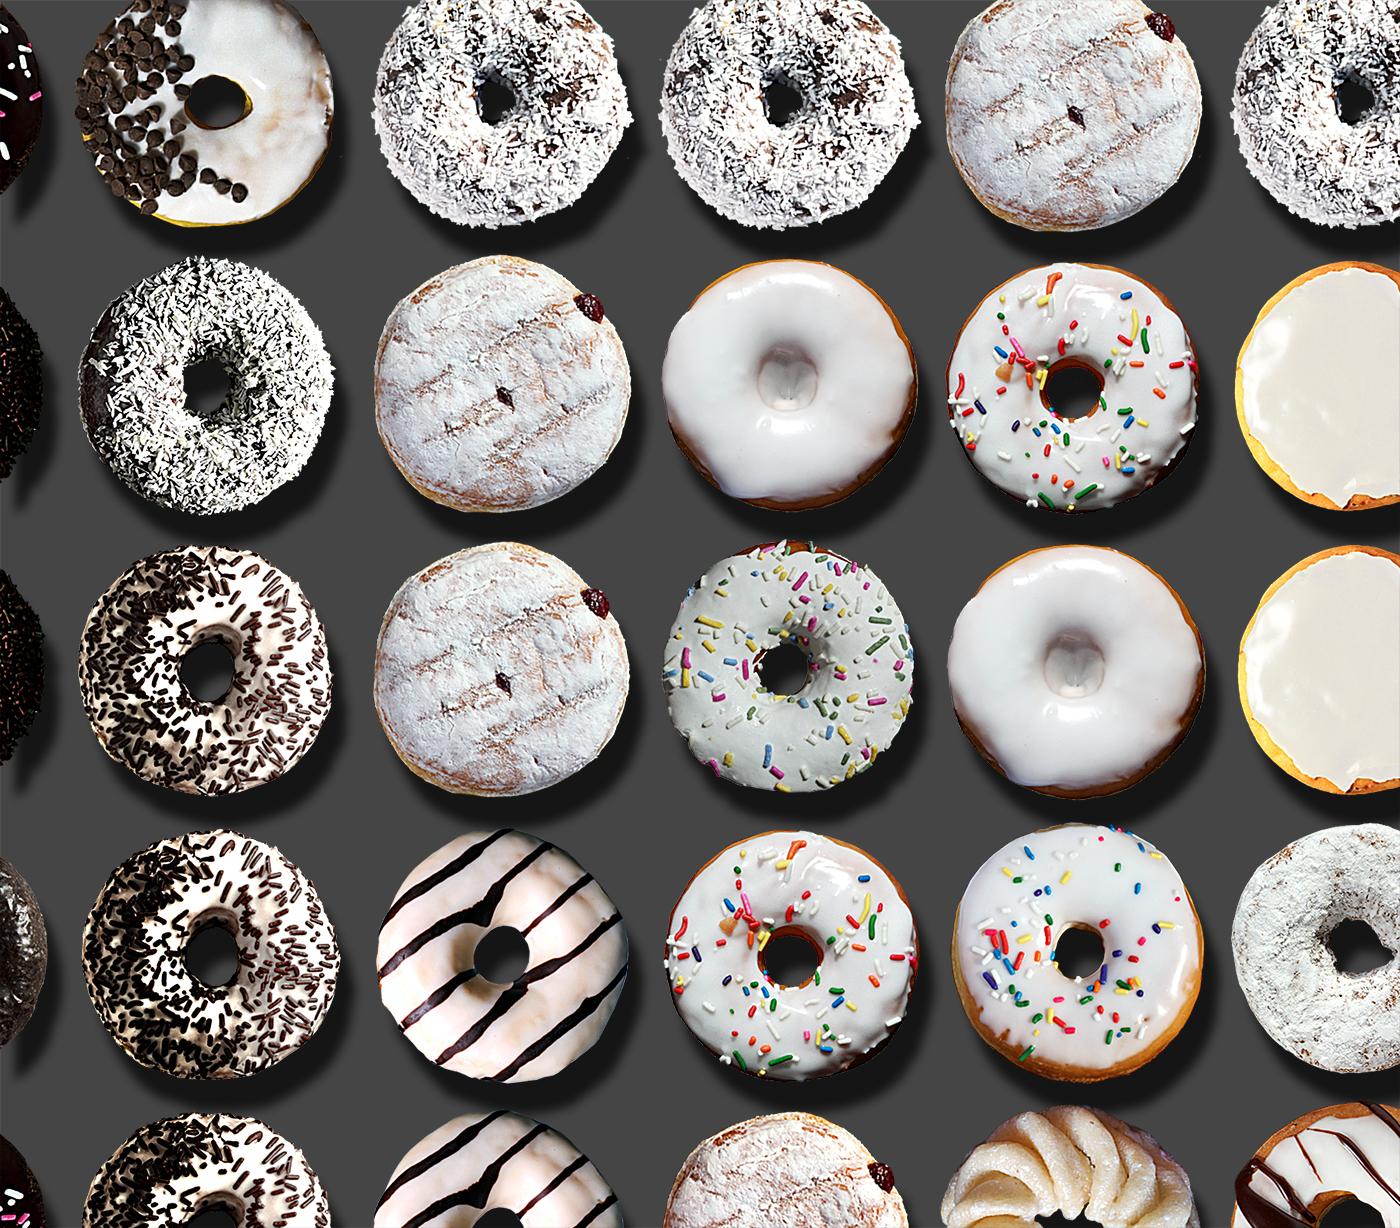 Sie haben in den sozialen Medien weltweit von den außergewöhnlichen Donut-Porträts von Candice CMC gelesen, und wir sind begeistert und stolz, ihre Arbeit zu vertreten.

Wir haben in diese Auflistung ein Bild aus dem weltweiten Social Media Buzz